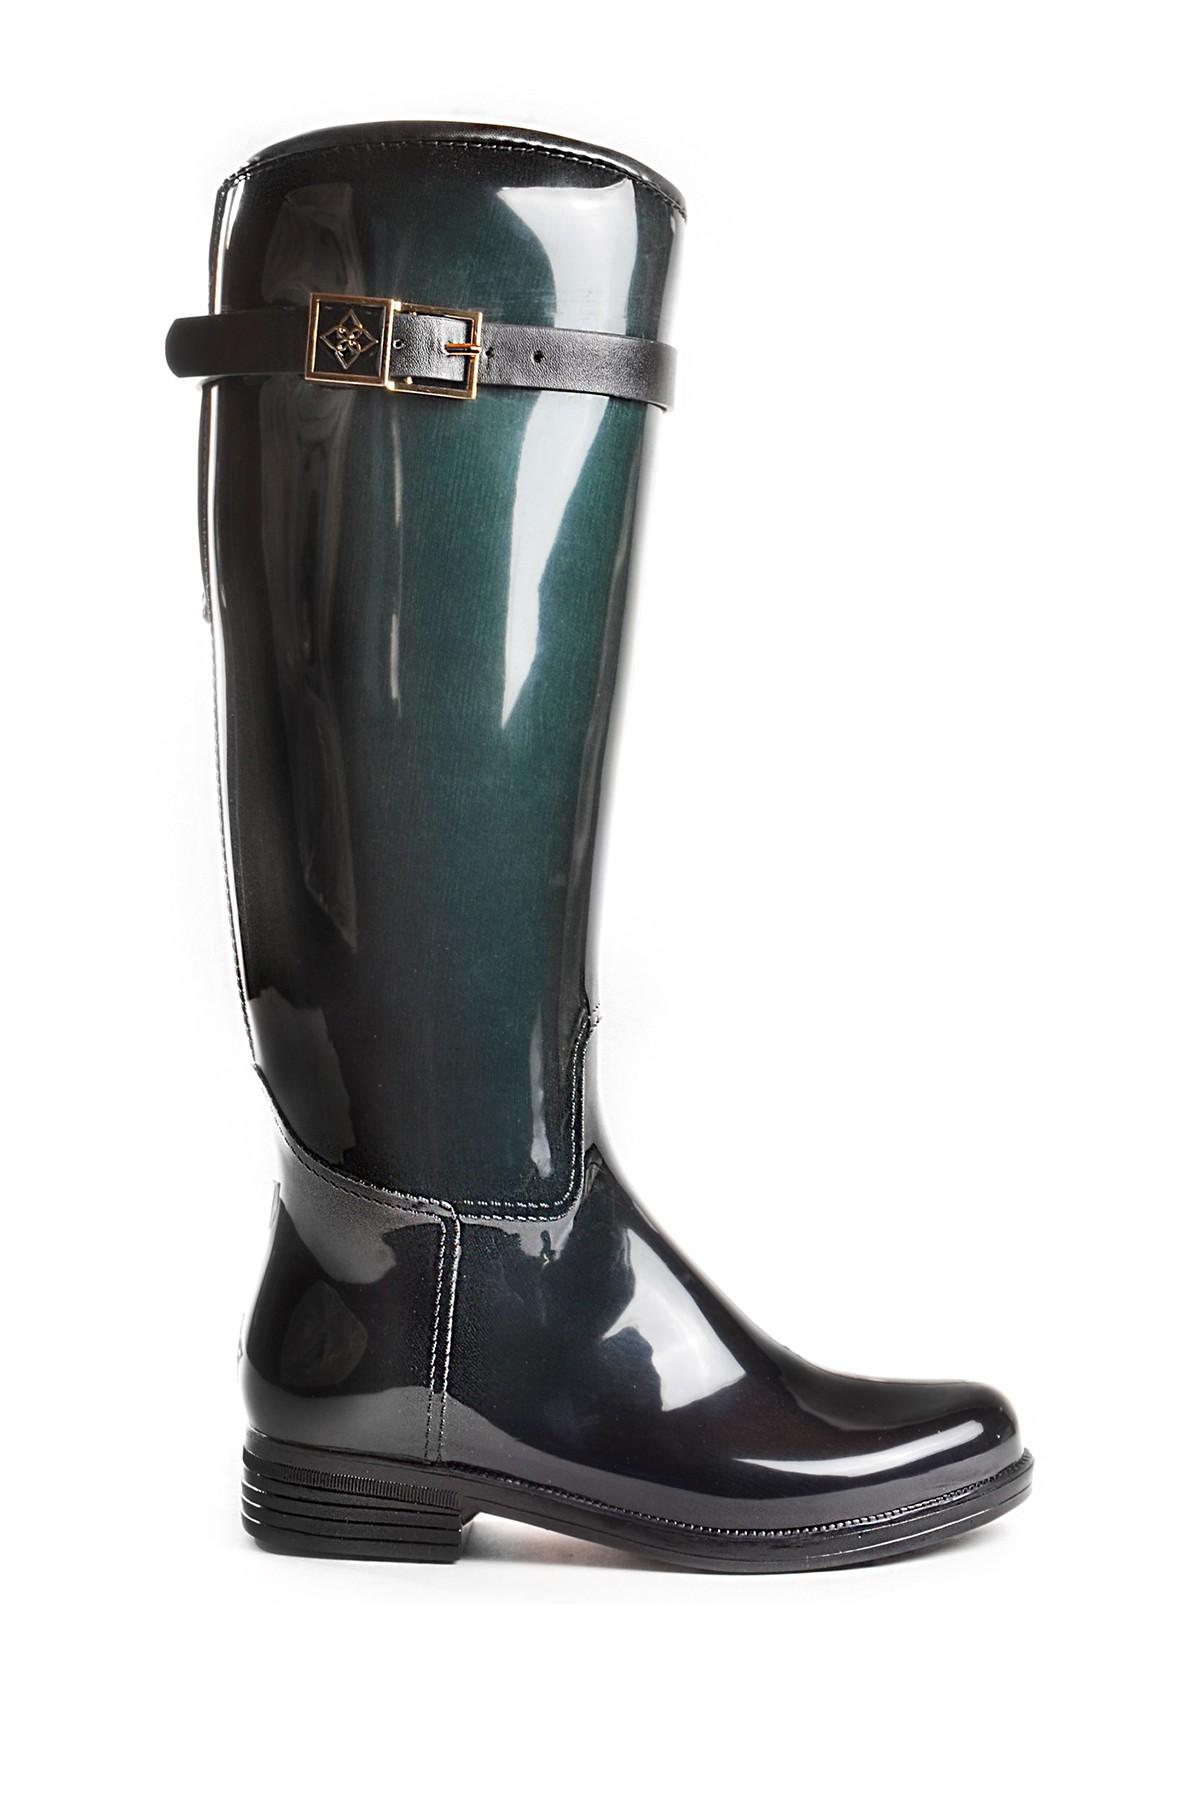 dav rain boots nordstrom